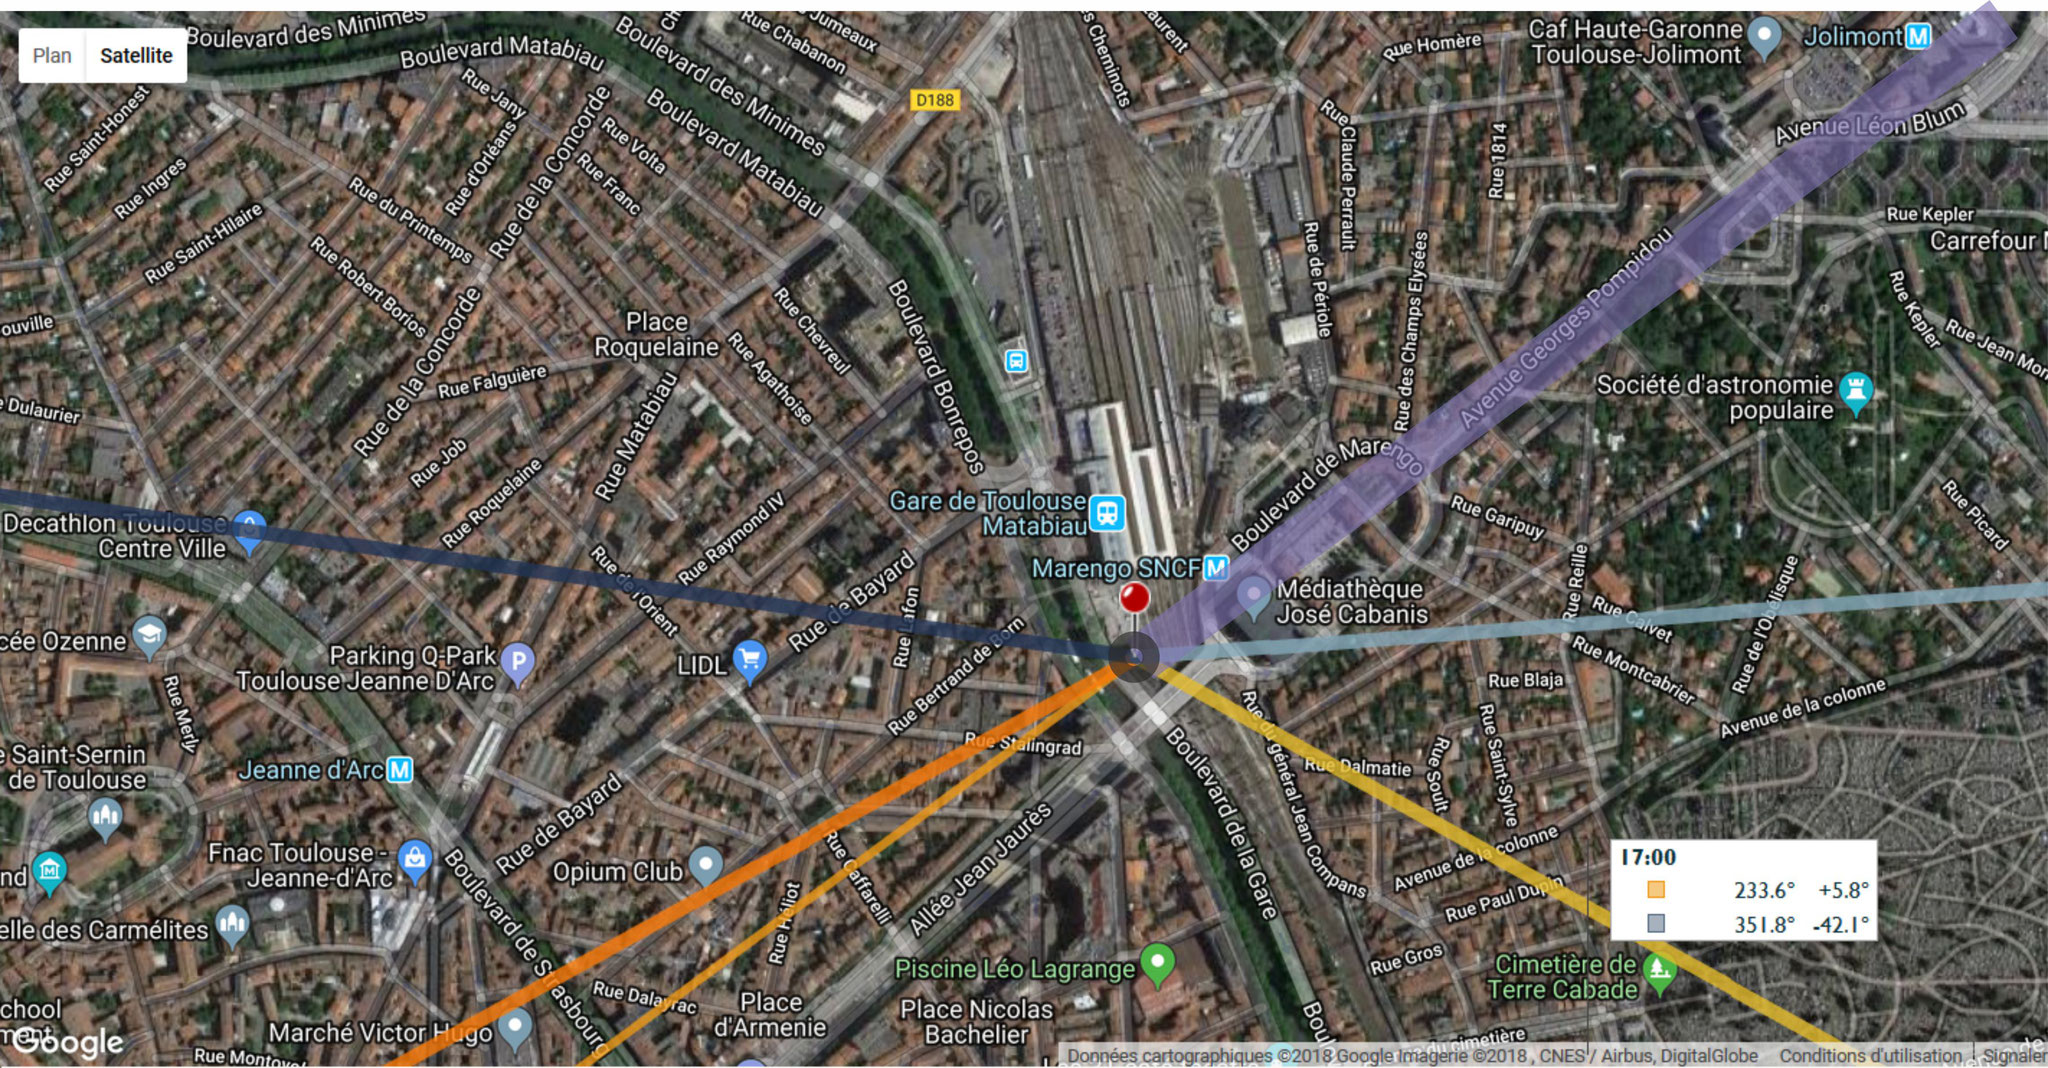 à 17h, elle passe au-dessus des allées Pompidou pour se perdre 1500m plus loin (CEAT)